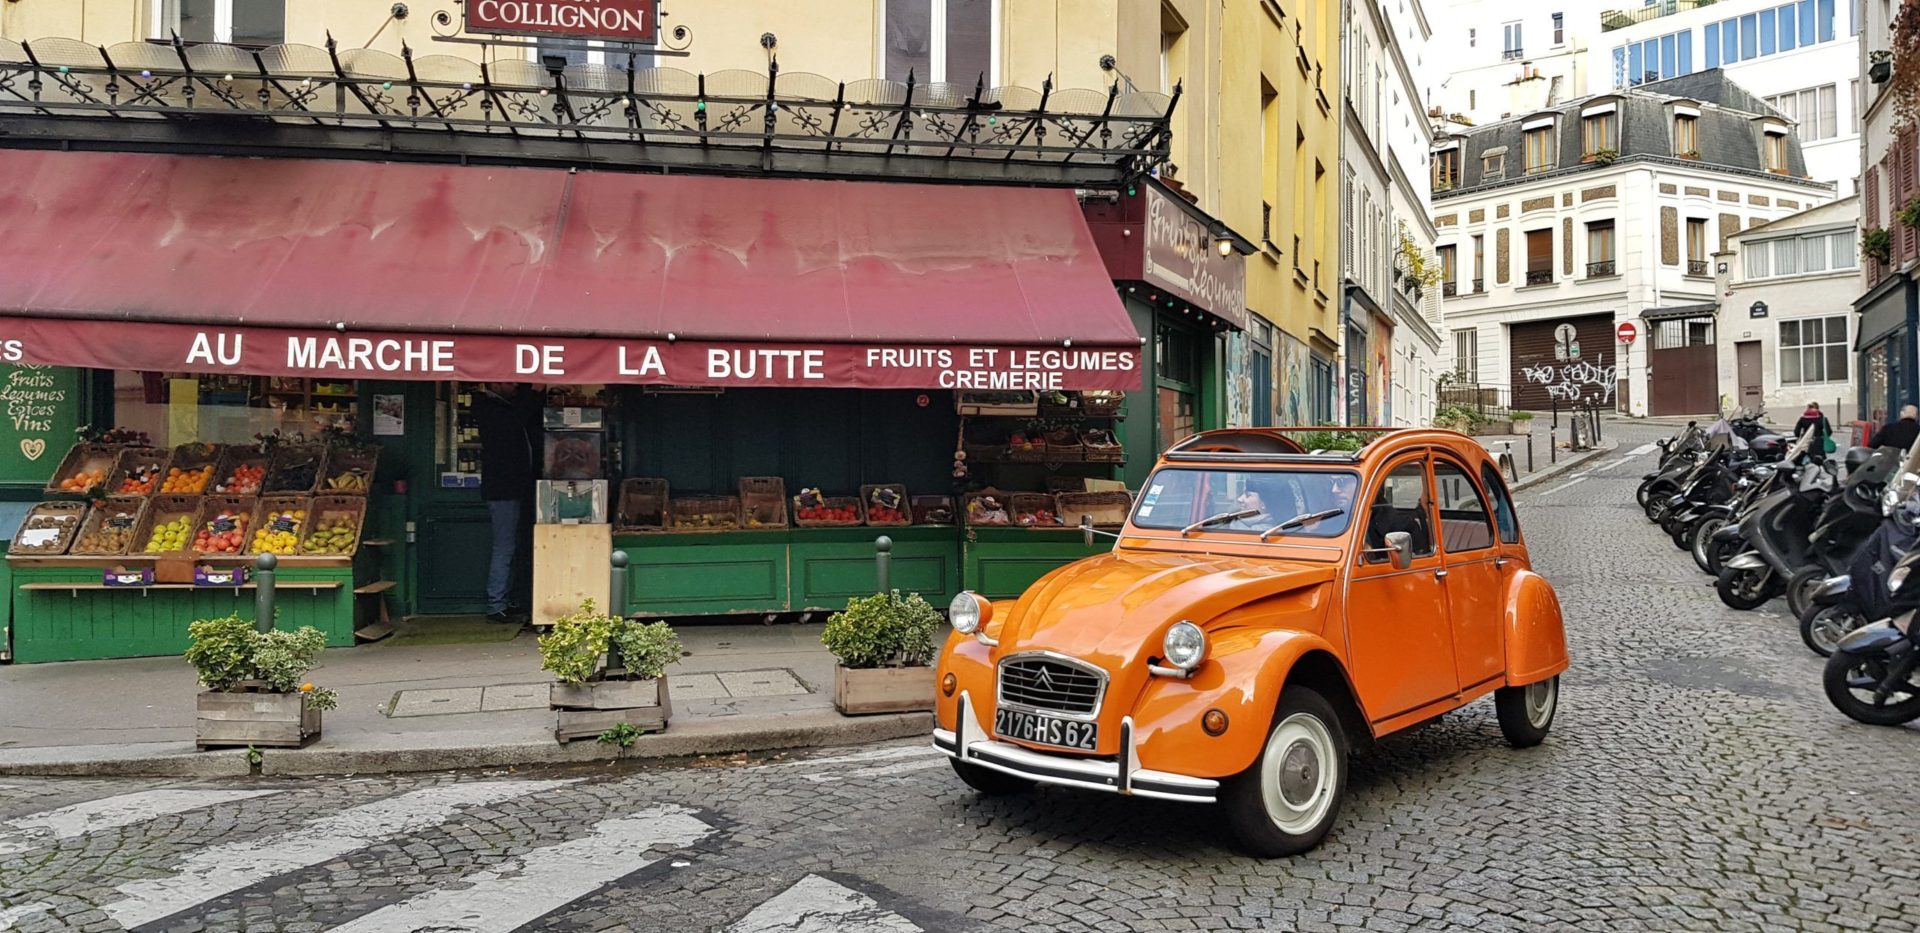 2CV Tour durch Montmartre, Paris. Entdecke die schönen, ungewöhnlichen Straßen rund um Montmartre in einem typisch französischen Auto.